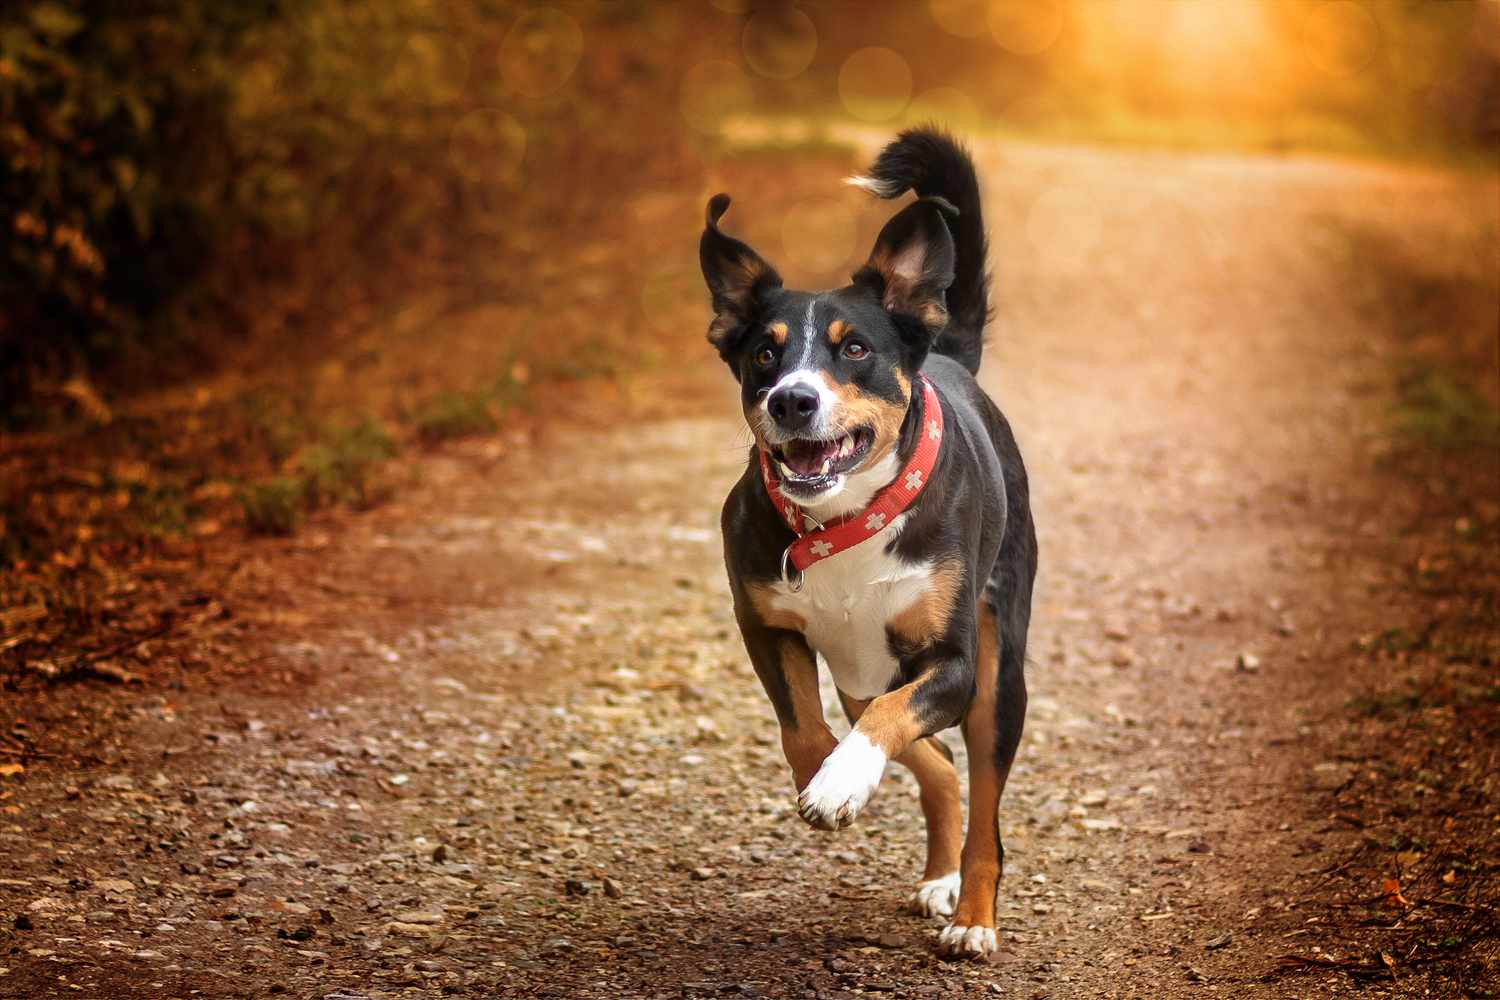 Adult Appenzeller Sennenhund running on path